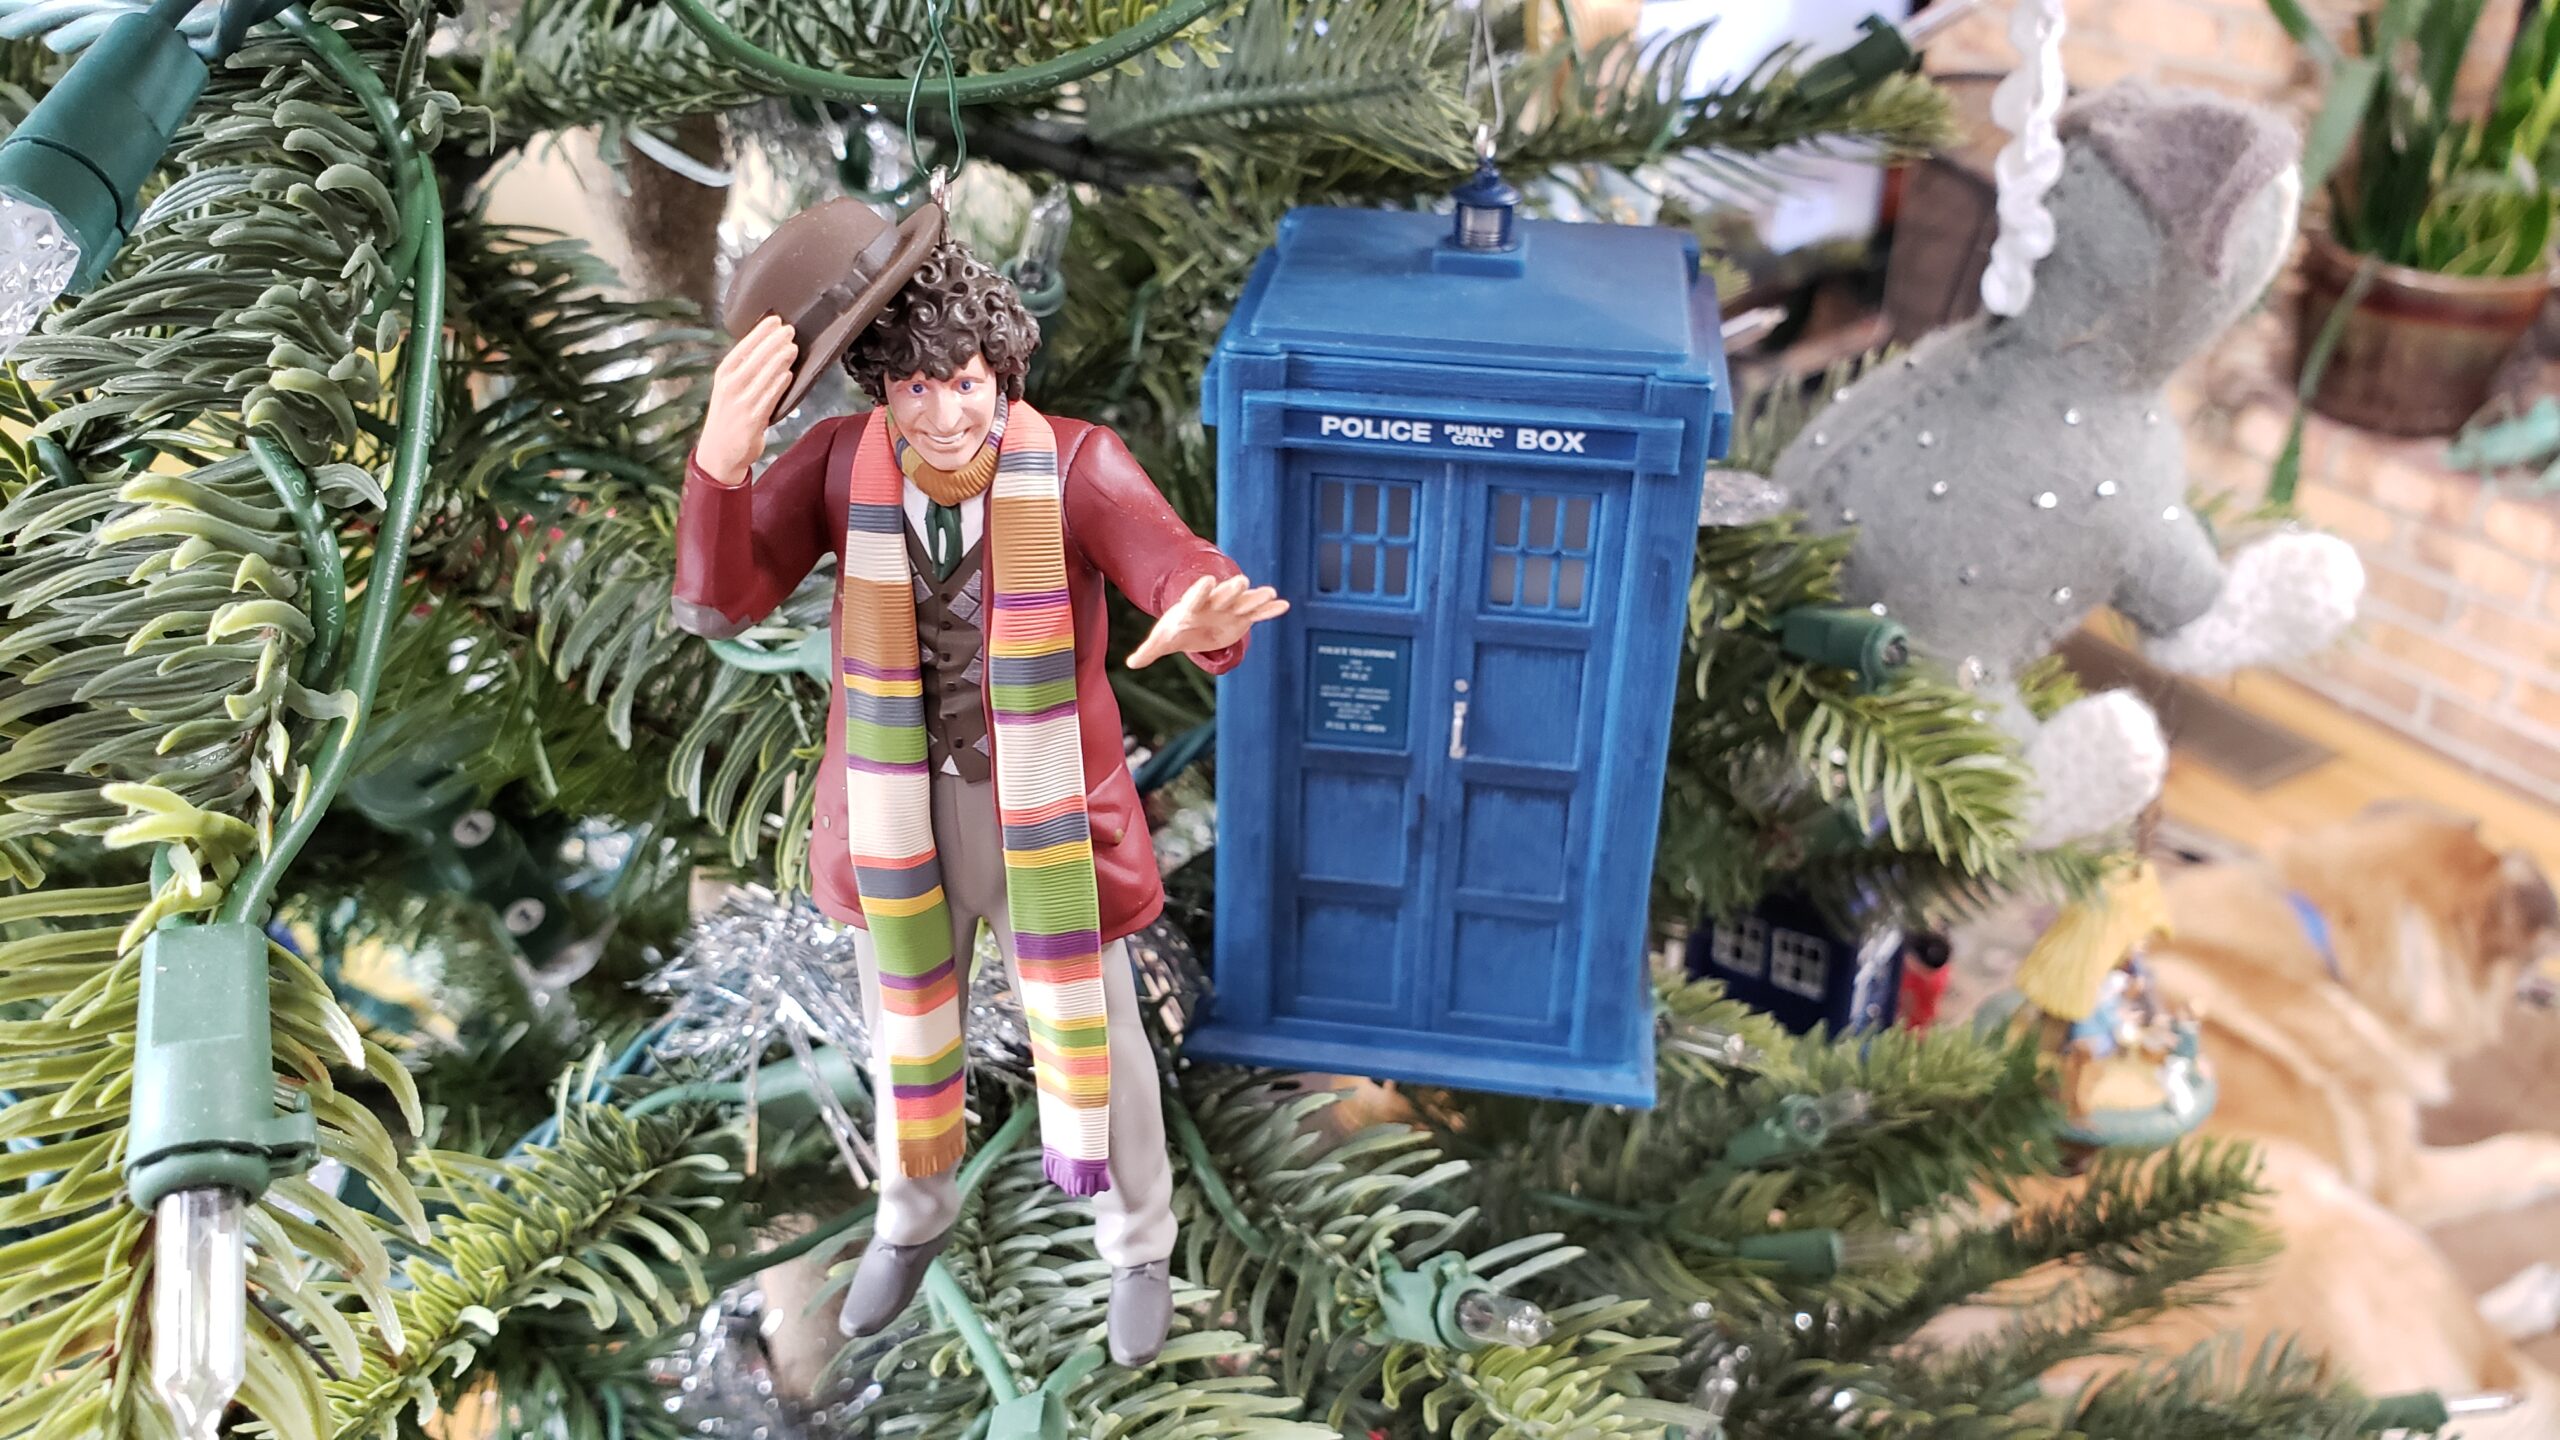 Hallmark Doctor Who TARDIS Christmas Ornament